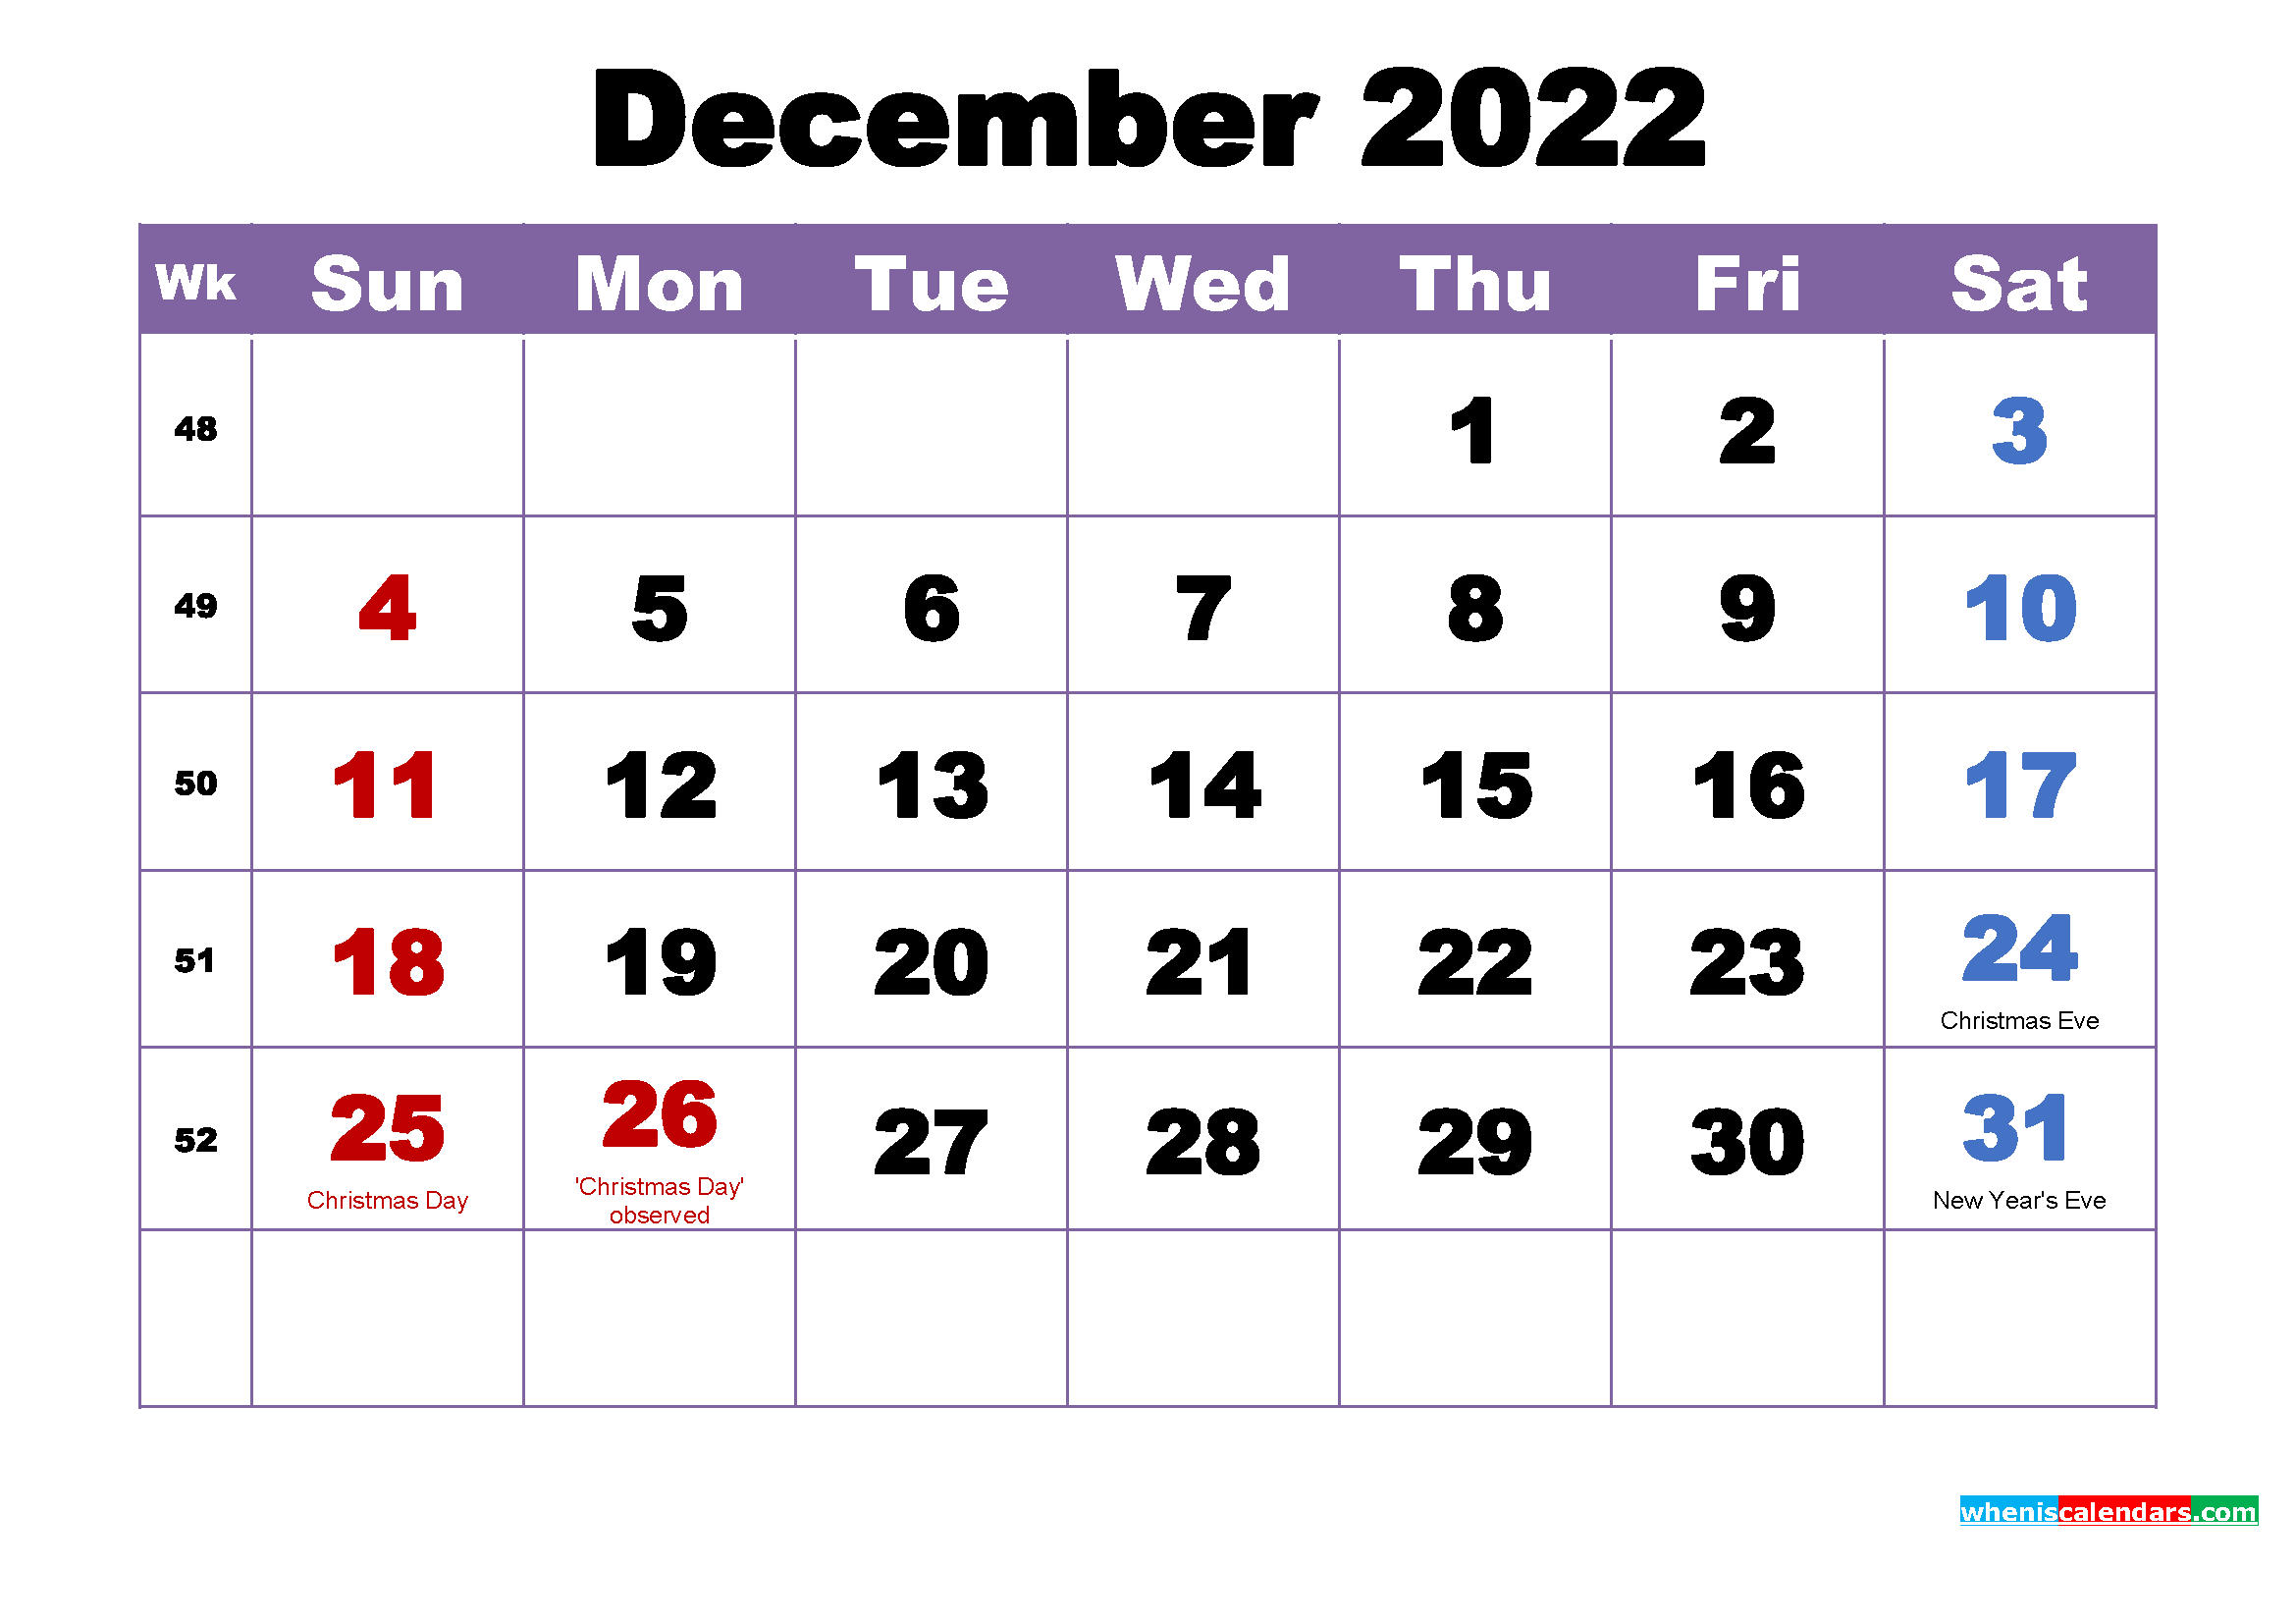 Dec 2022 Calendar Free December 2022 Calendar With Holidays Printable